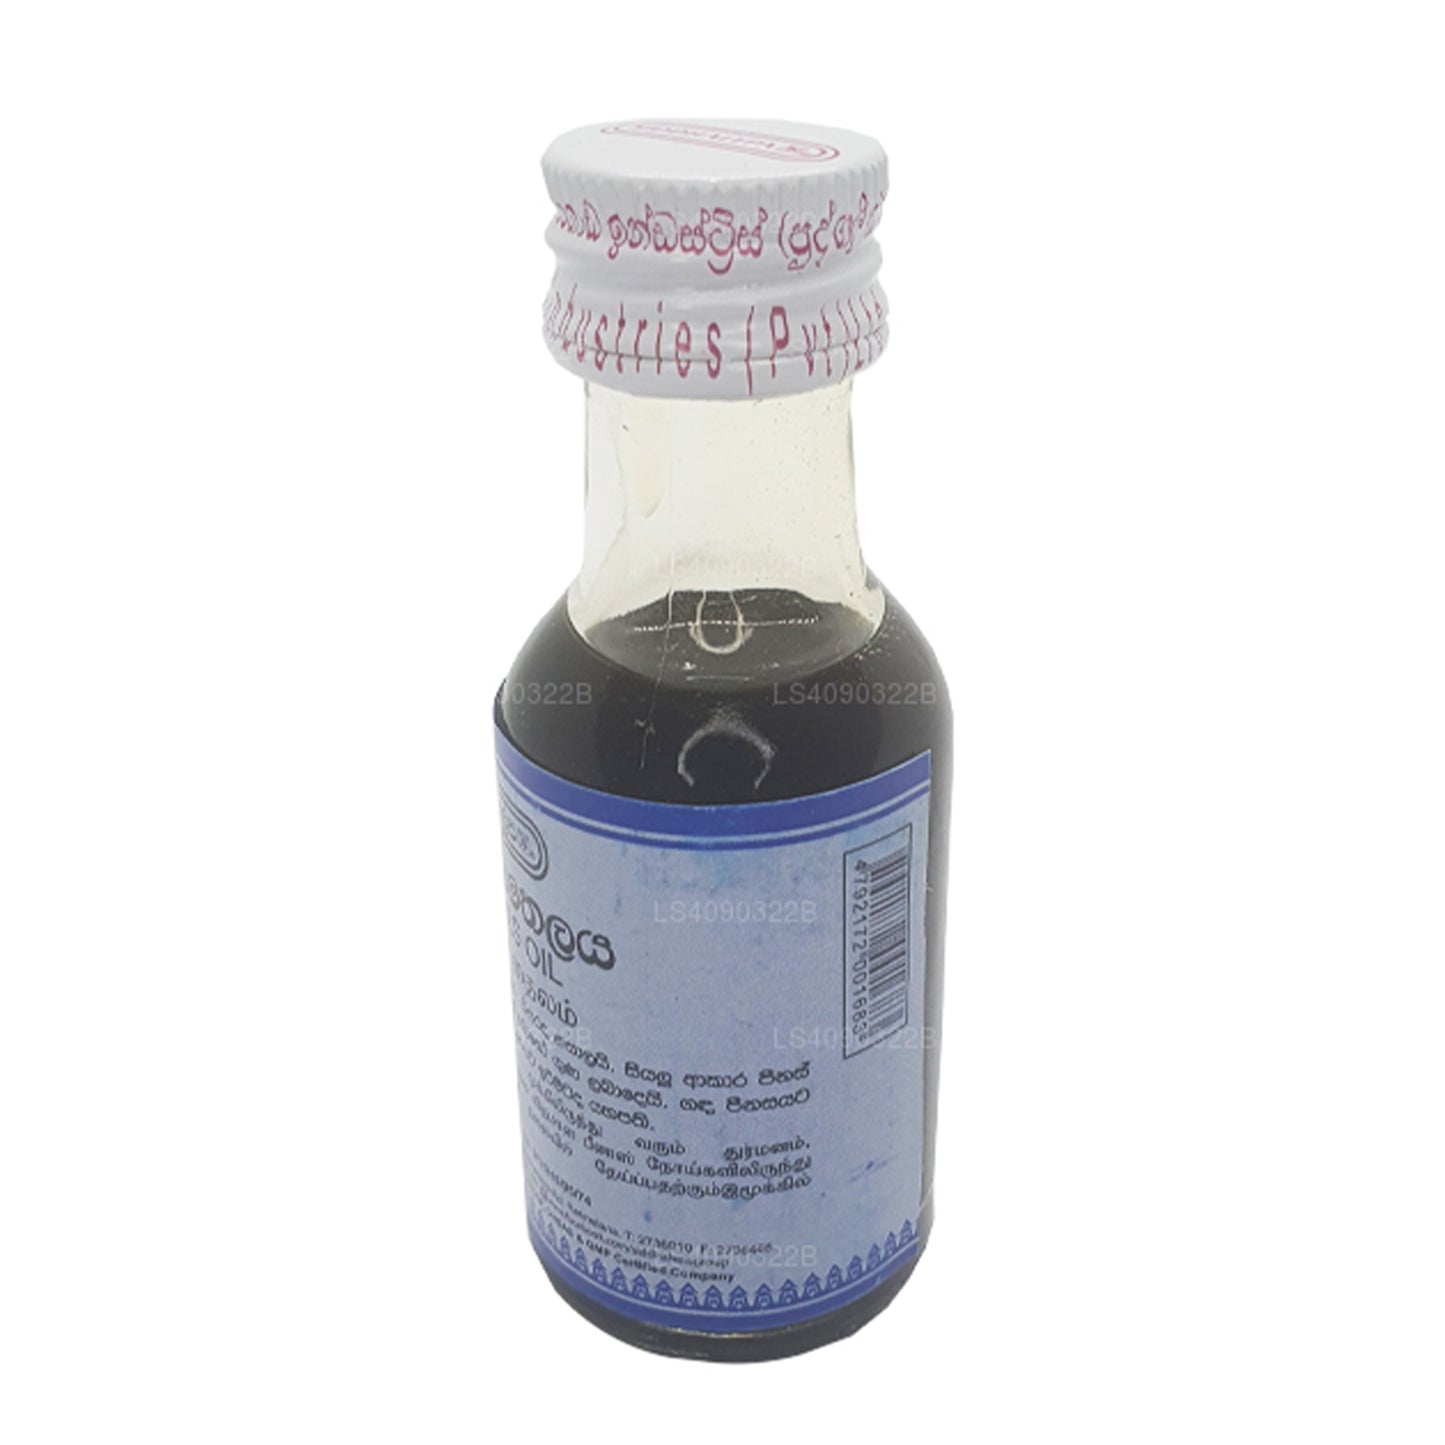 Siddhalepa Peenas-olie (30 ml)